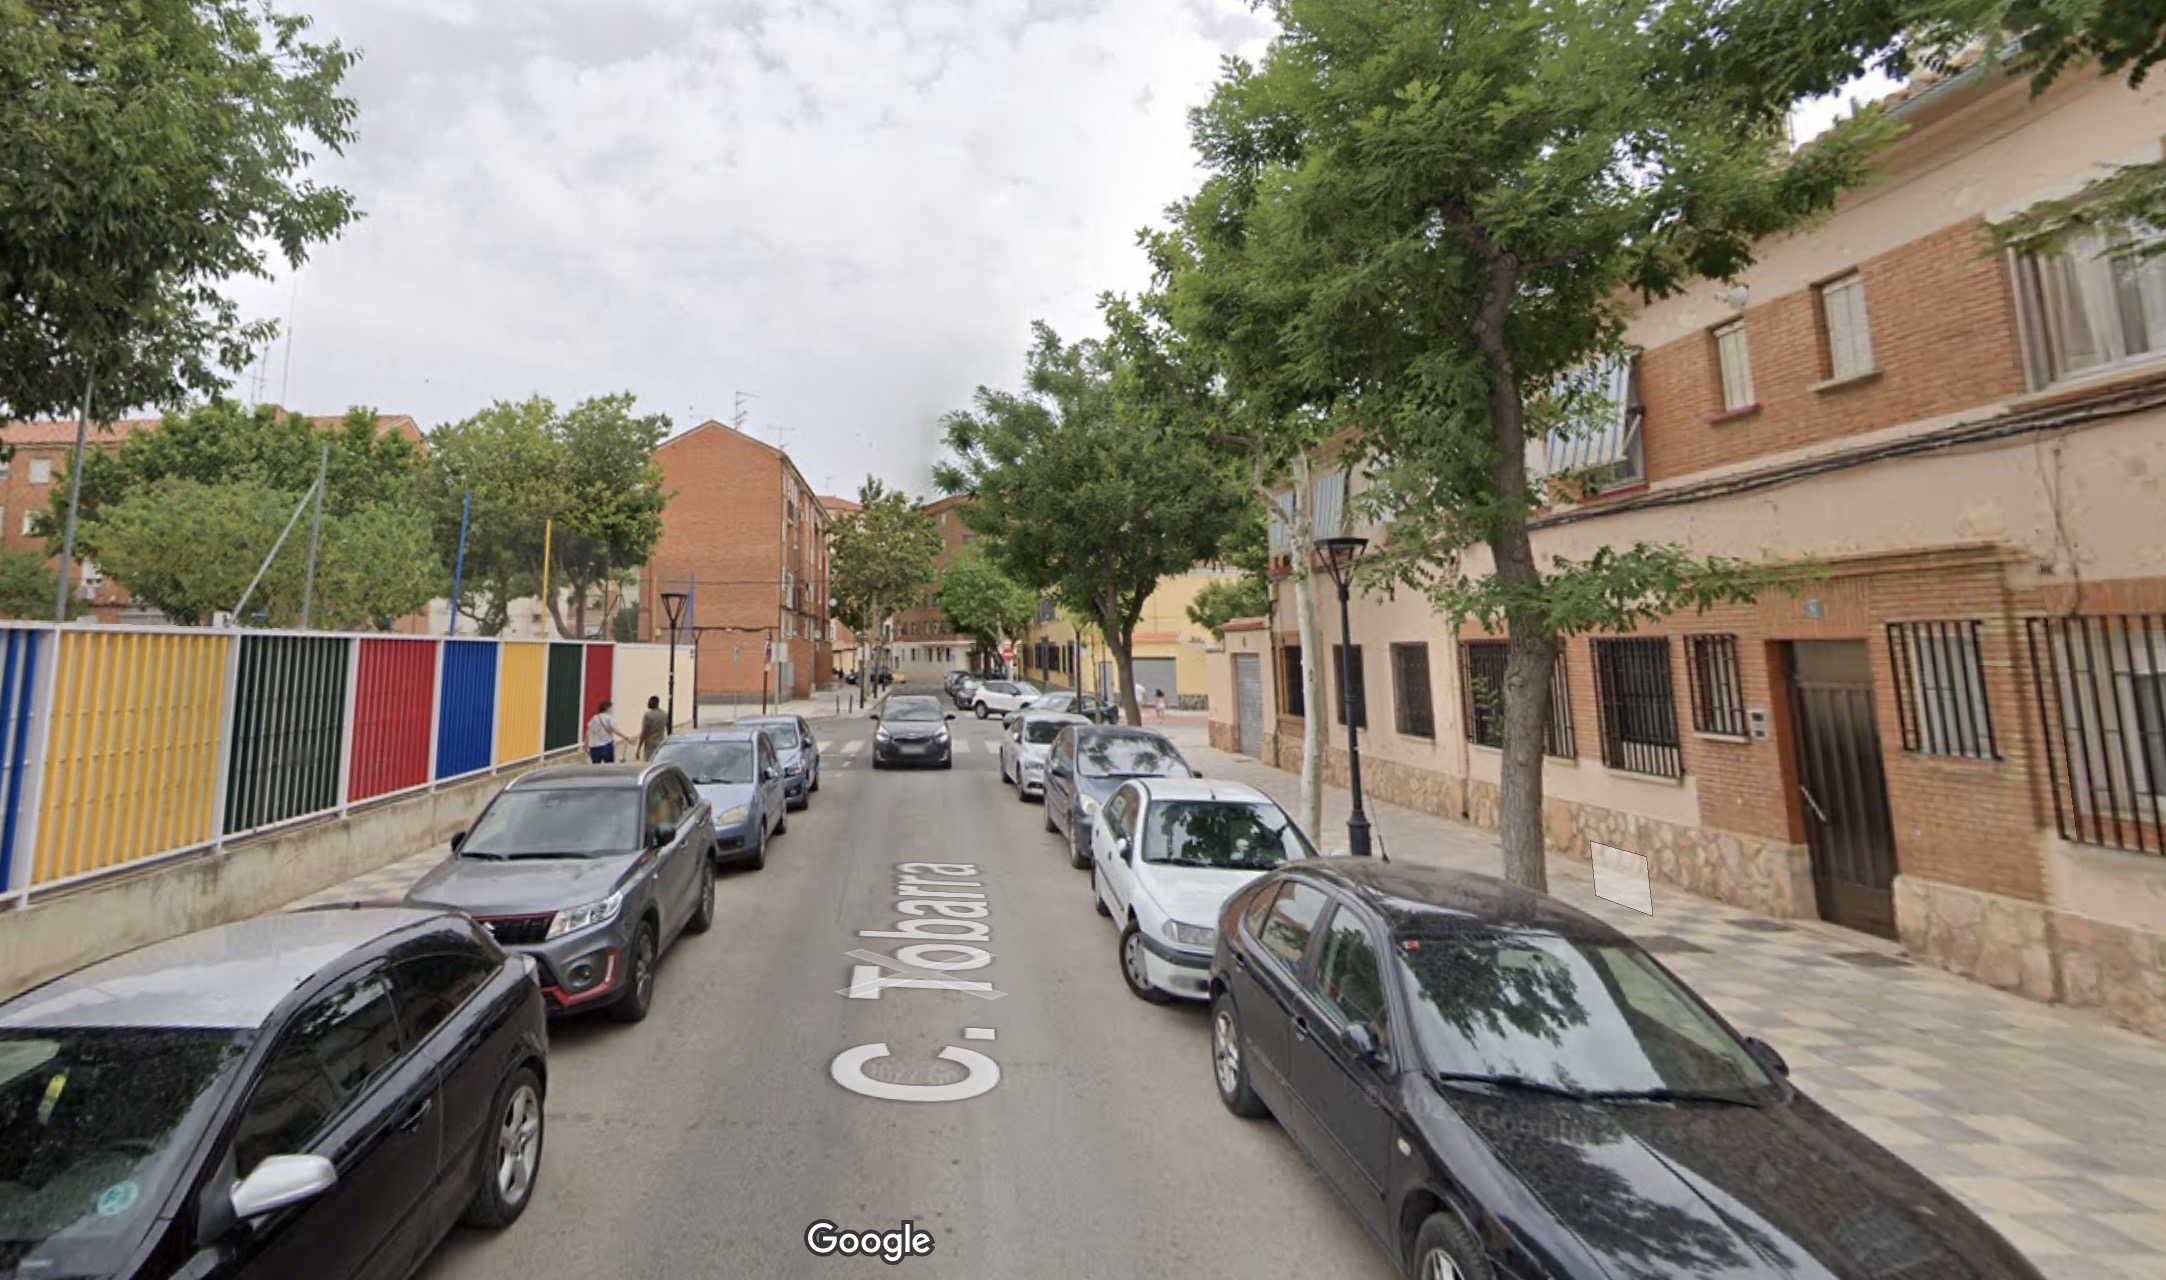 El incendio se ha producido en una vivienda de la calle Tobarra, en Albacete. Imagen de Google Maps.